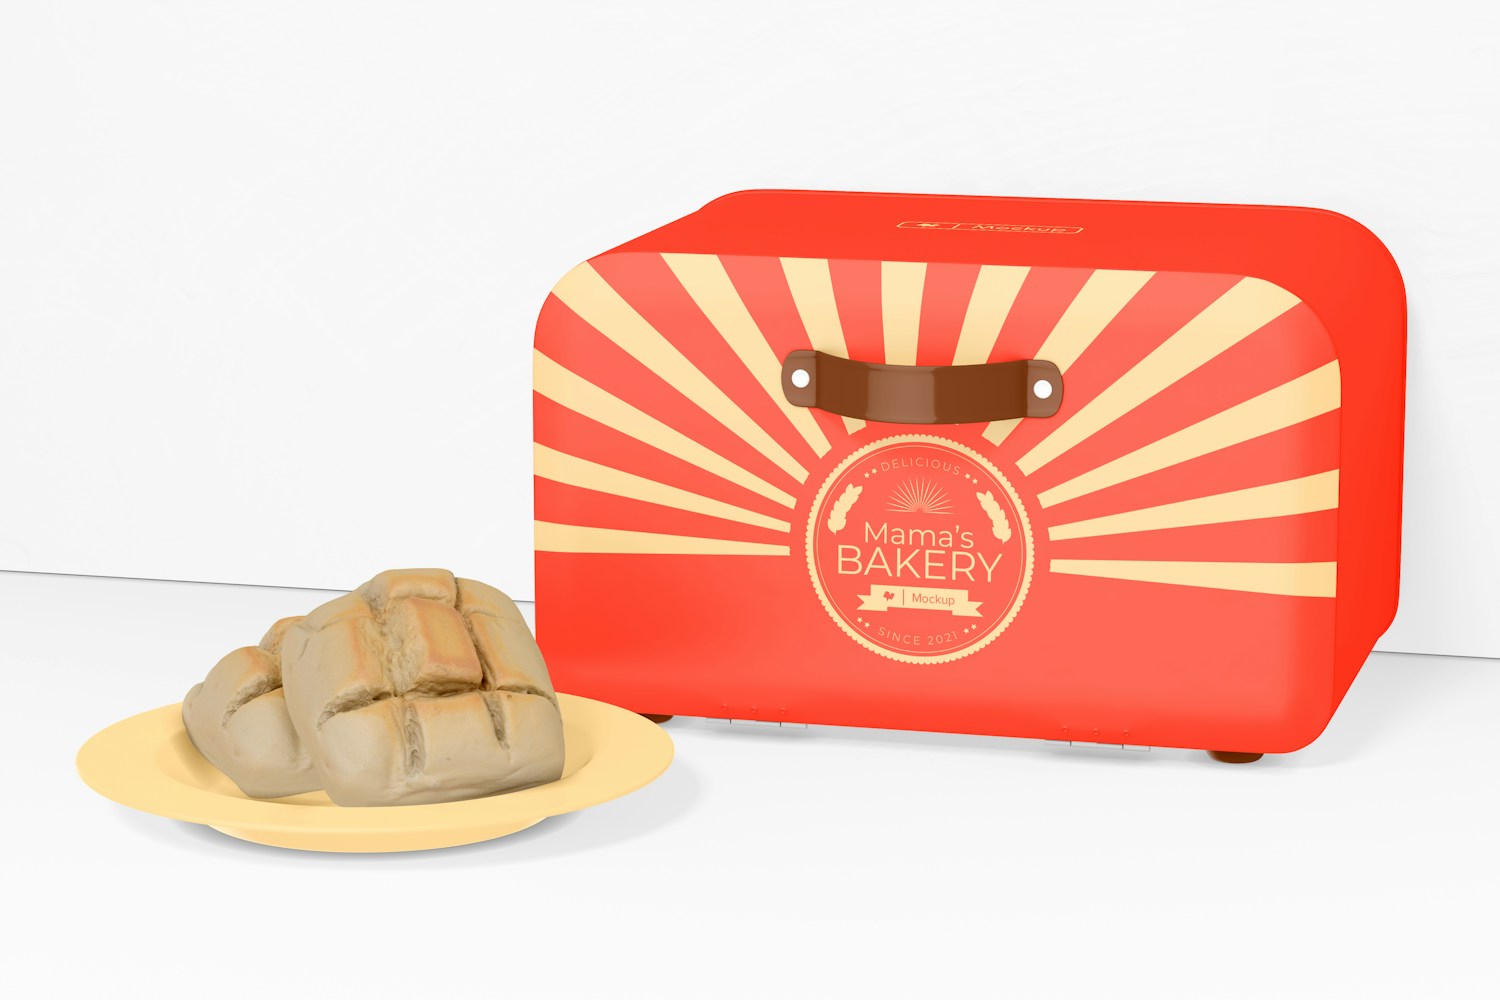 Retro Style Bread Box Mockup